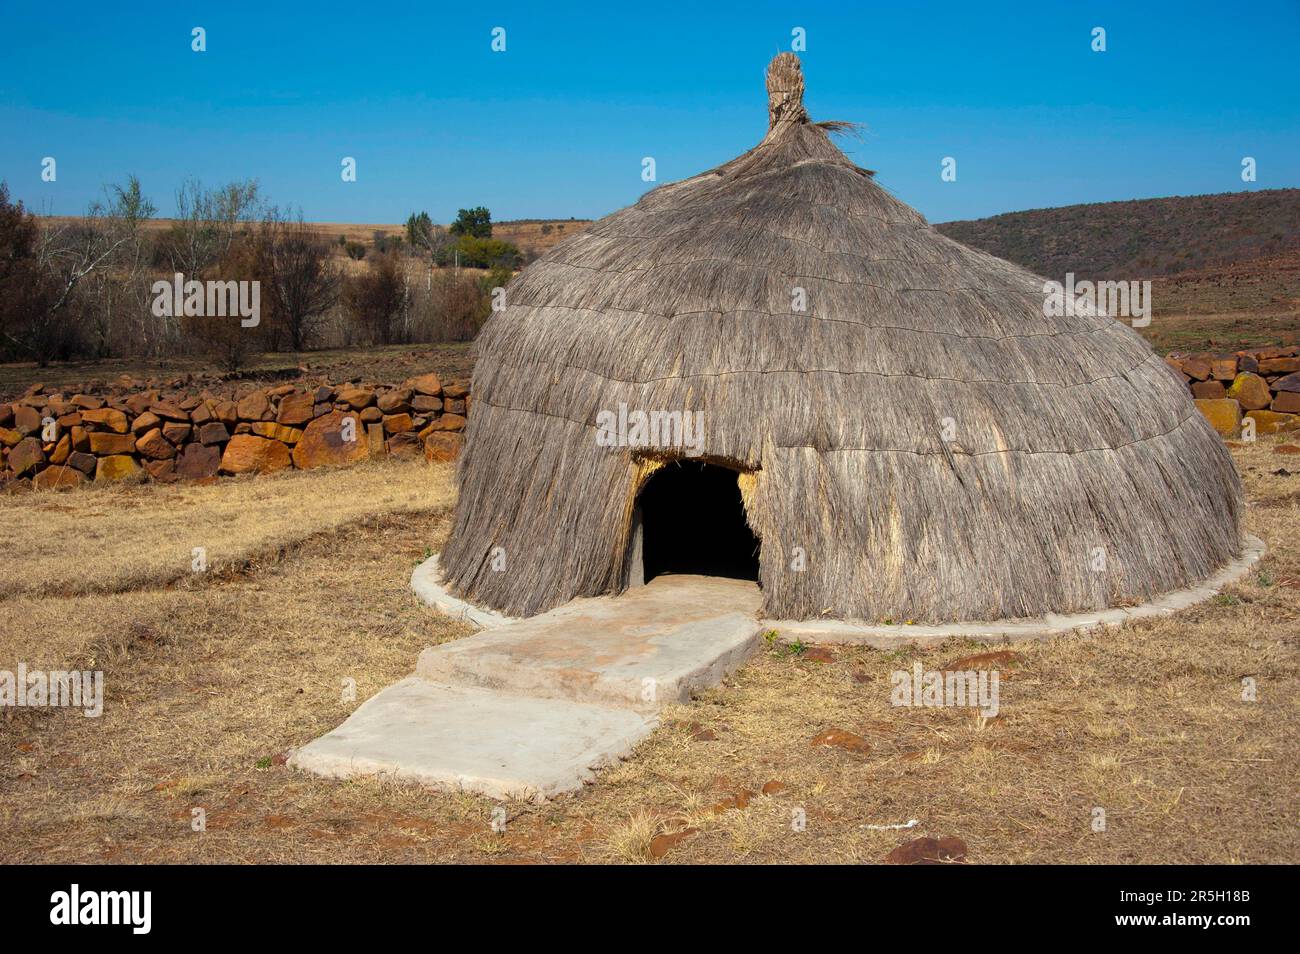 Round hut, Ndebele museum village, Botshabelo, Middelburg, Mpumalanga, South Africa Stock Photo